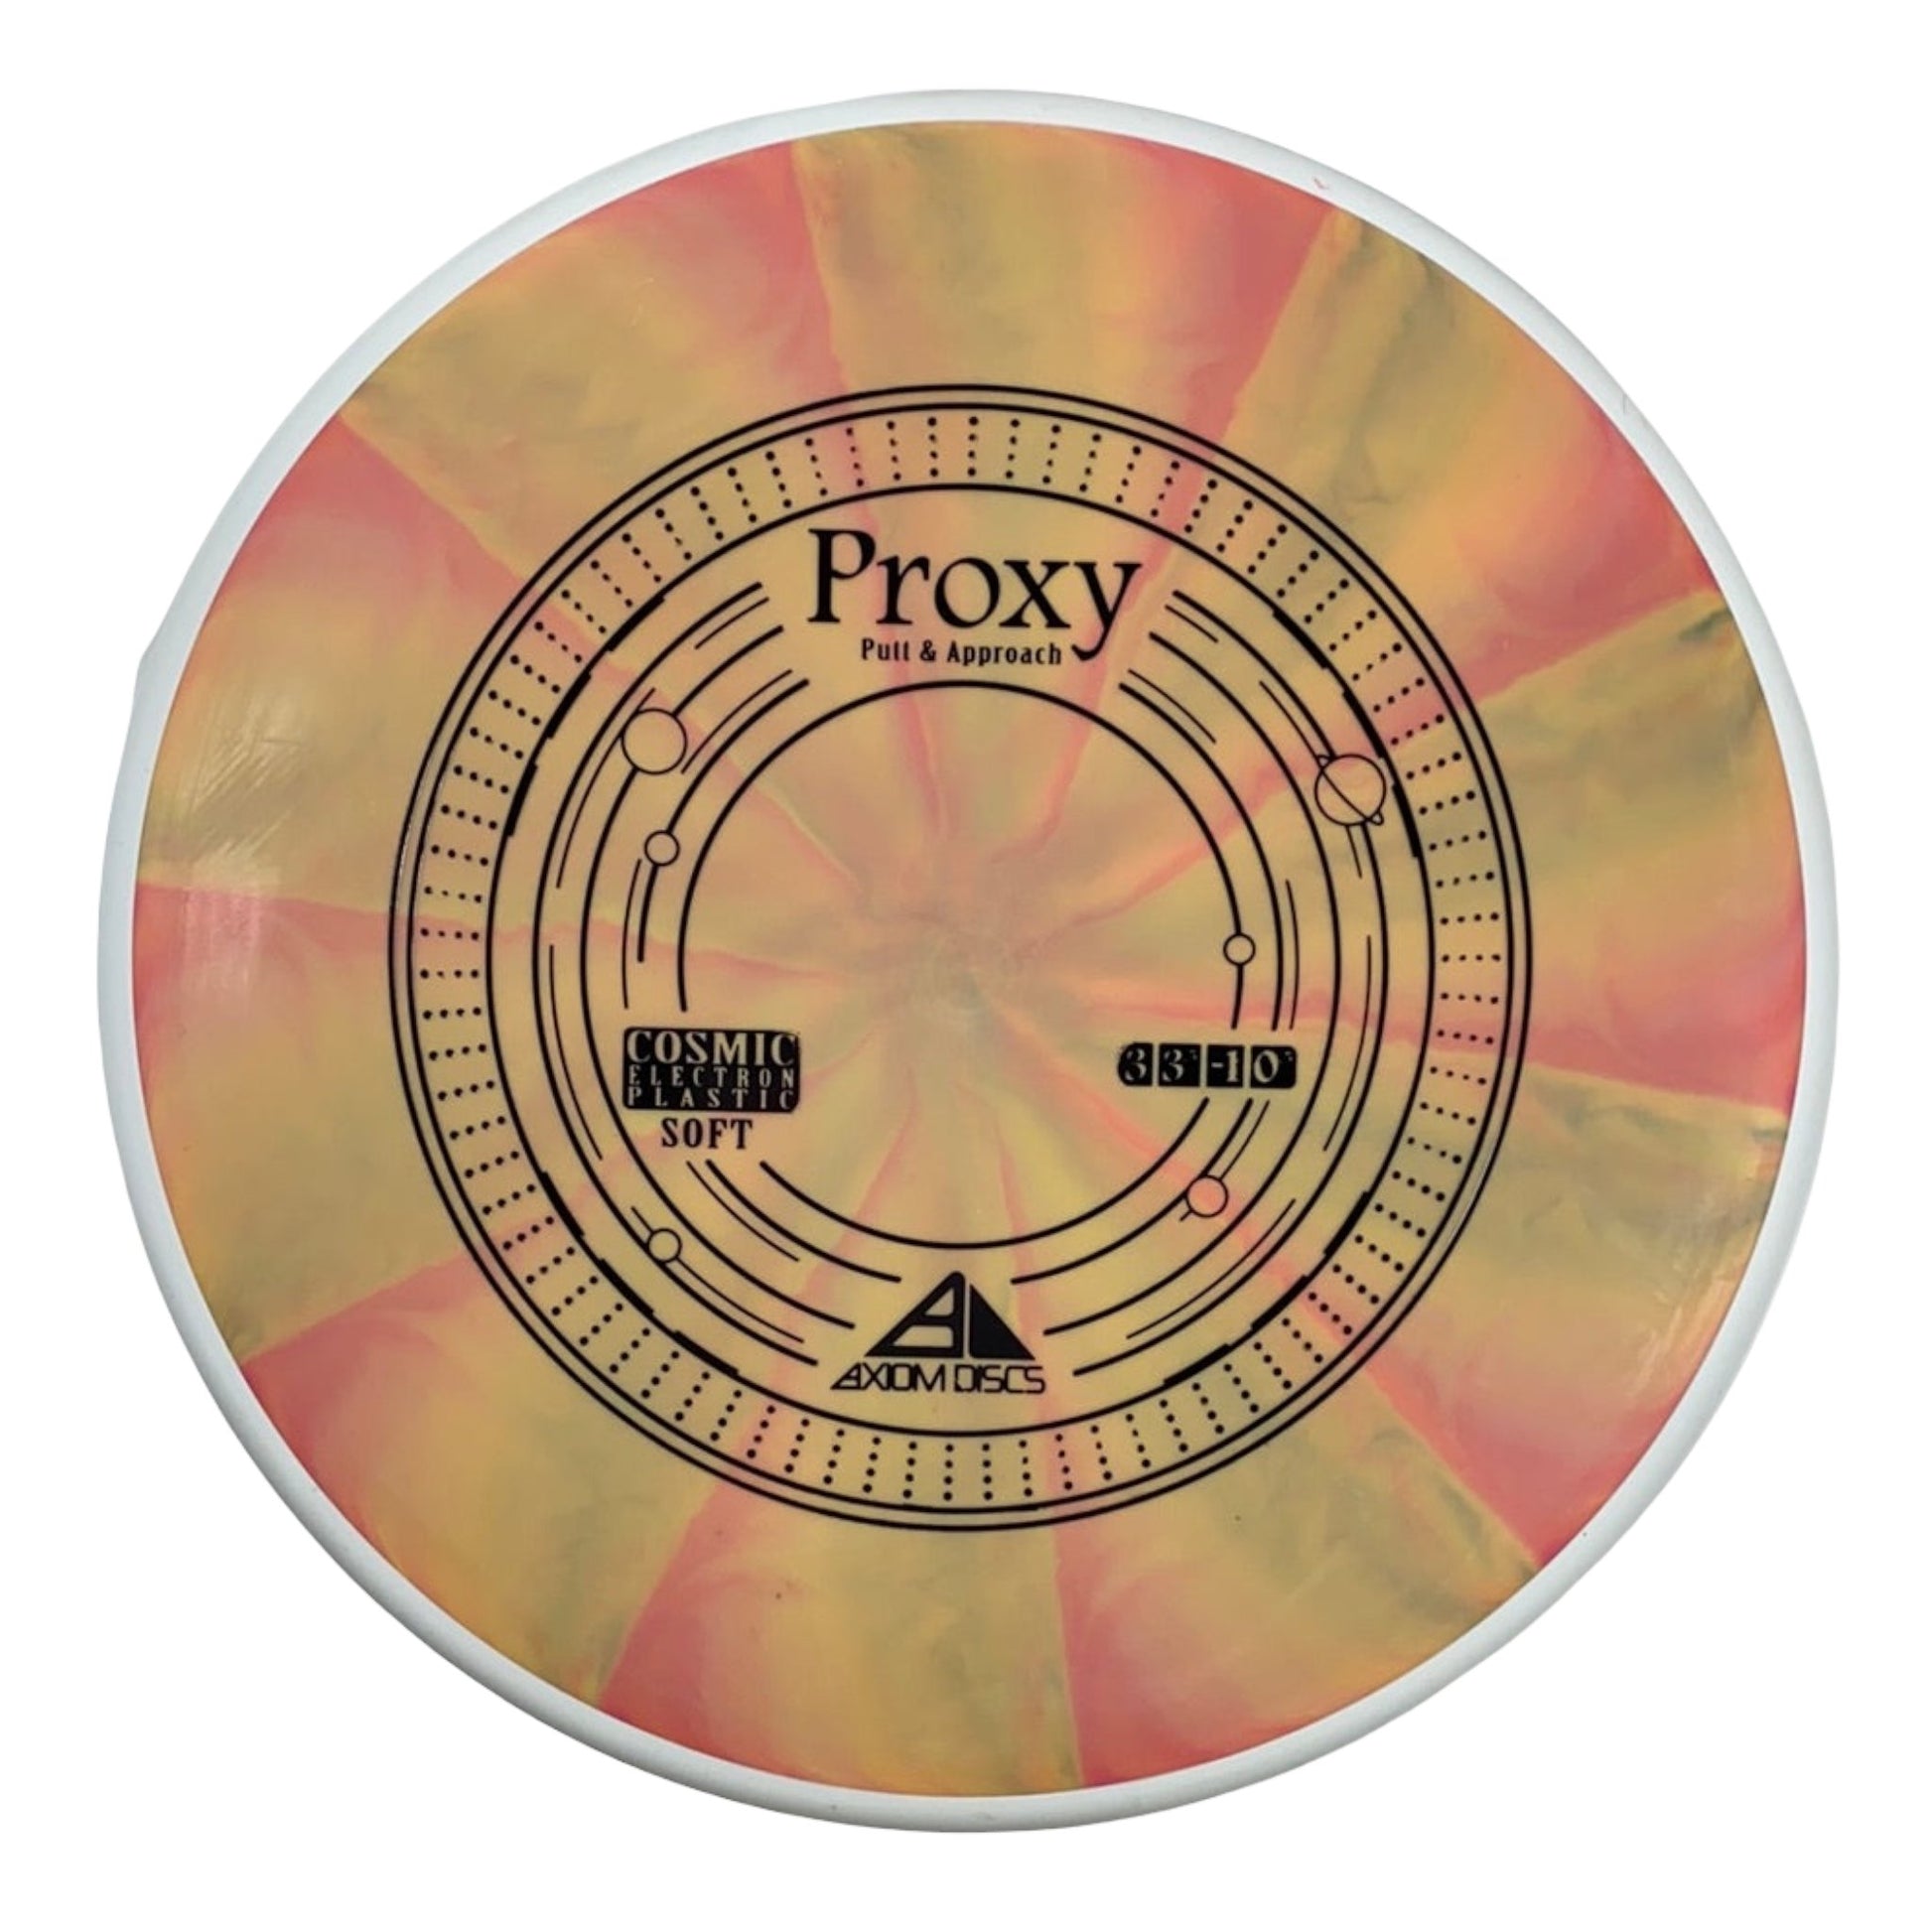 Axiom Discs Proxy | Cosmic Electron Soft | Orange/White 169g